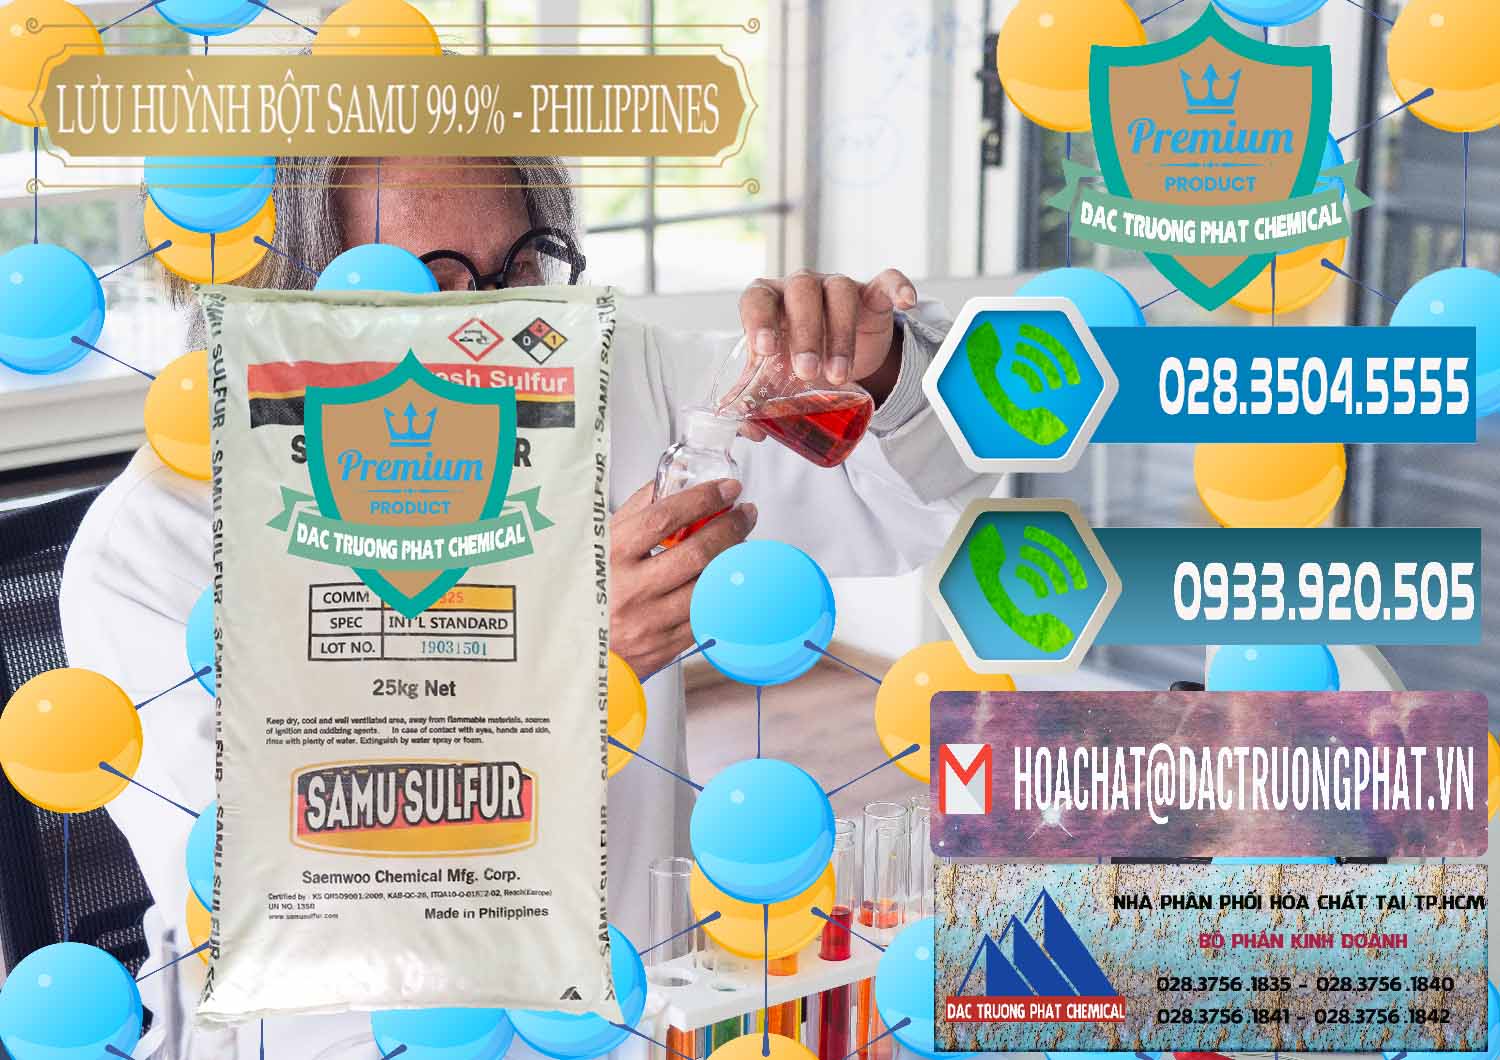 Công ty kinh doanh & bán Lưu huỳnh Bột - Sulfur Powder Samu Philippines - 0201 - Phân phối hóa chất tại TP.HCM - congtyhoachat.net